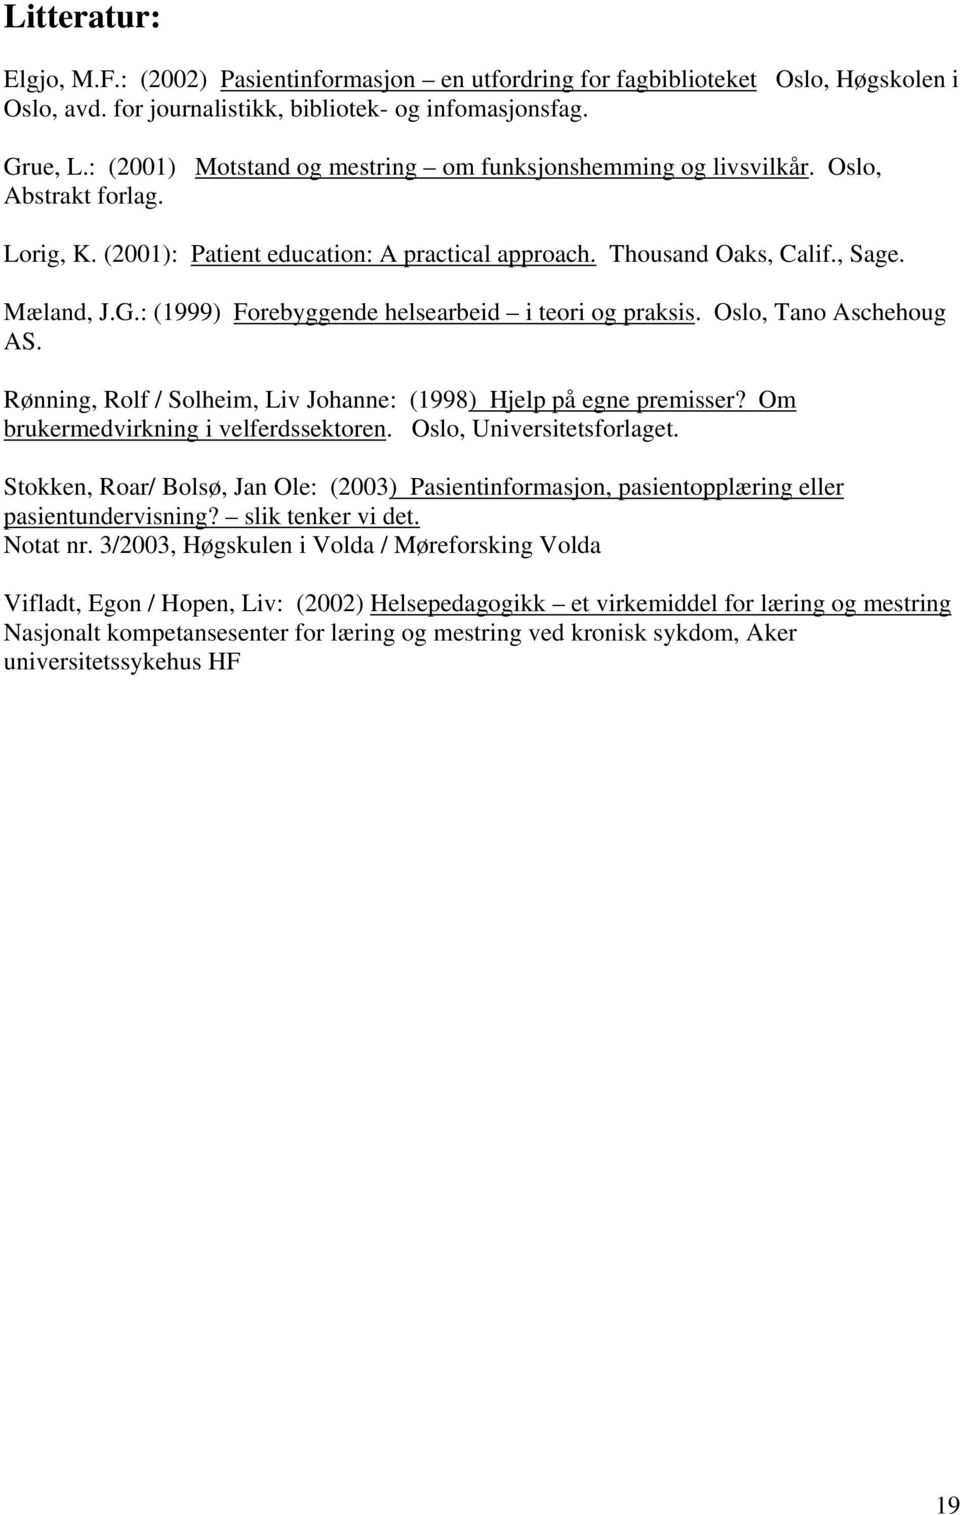 : (1999) Forebyggende helsearbeid i teori og praksis. Oslo, Tano Aschehoug AS. Rønning, Rolf / Solheim, Liv Johanne: (1998) Hjelp på egne premisser? Om brukermedvirkning i velferdssektoren.